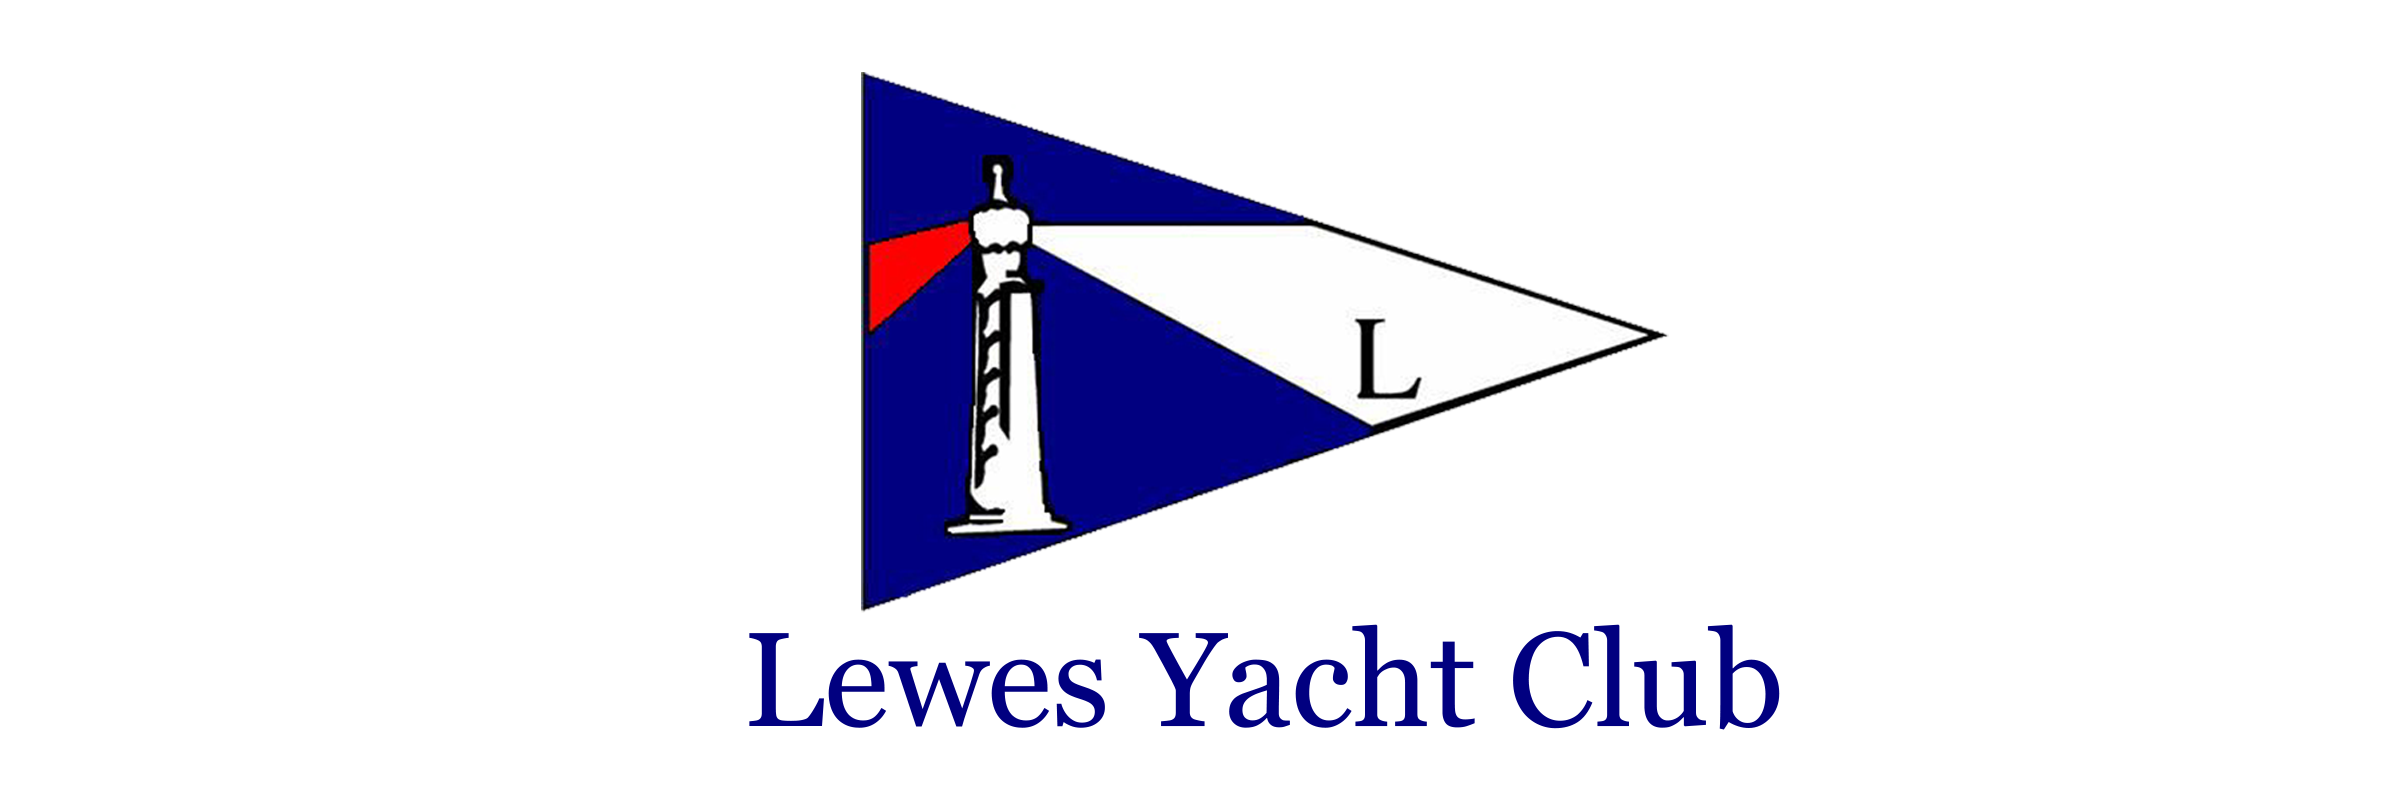 lewes yacht club login